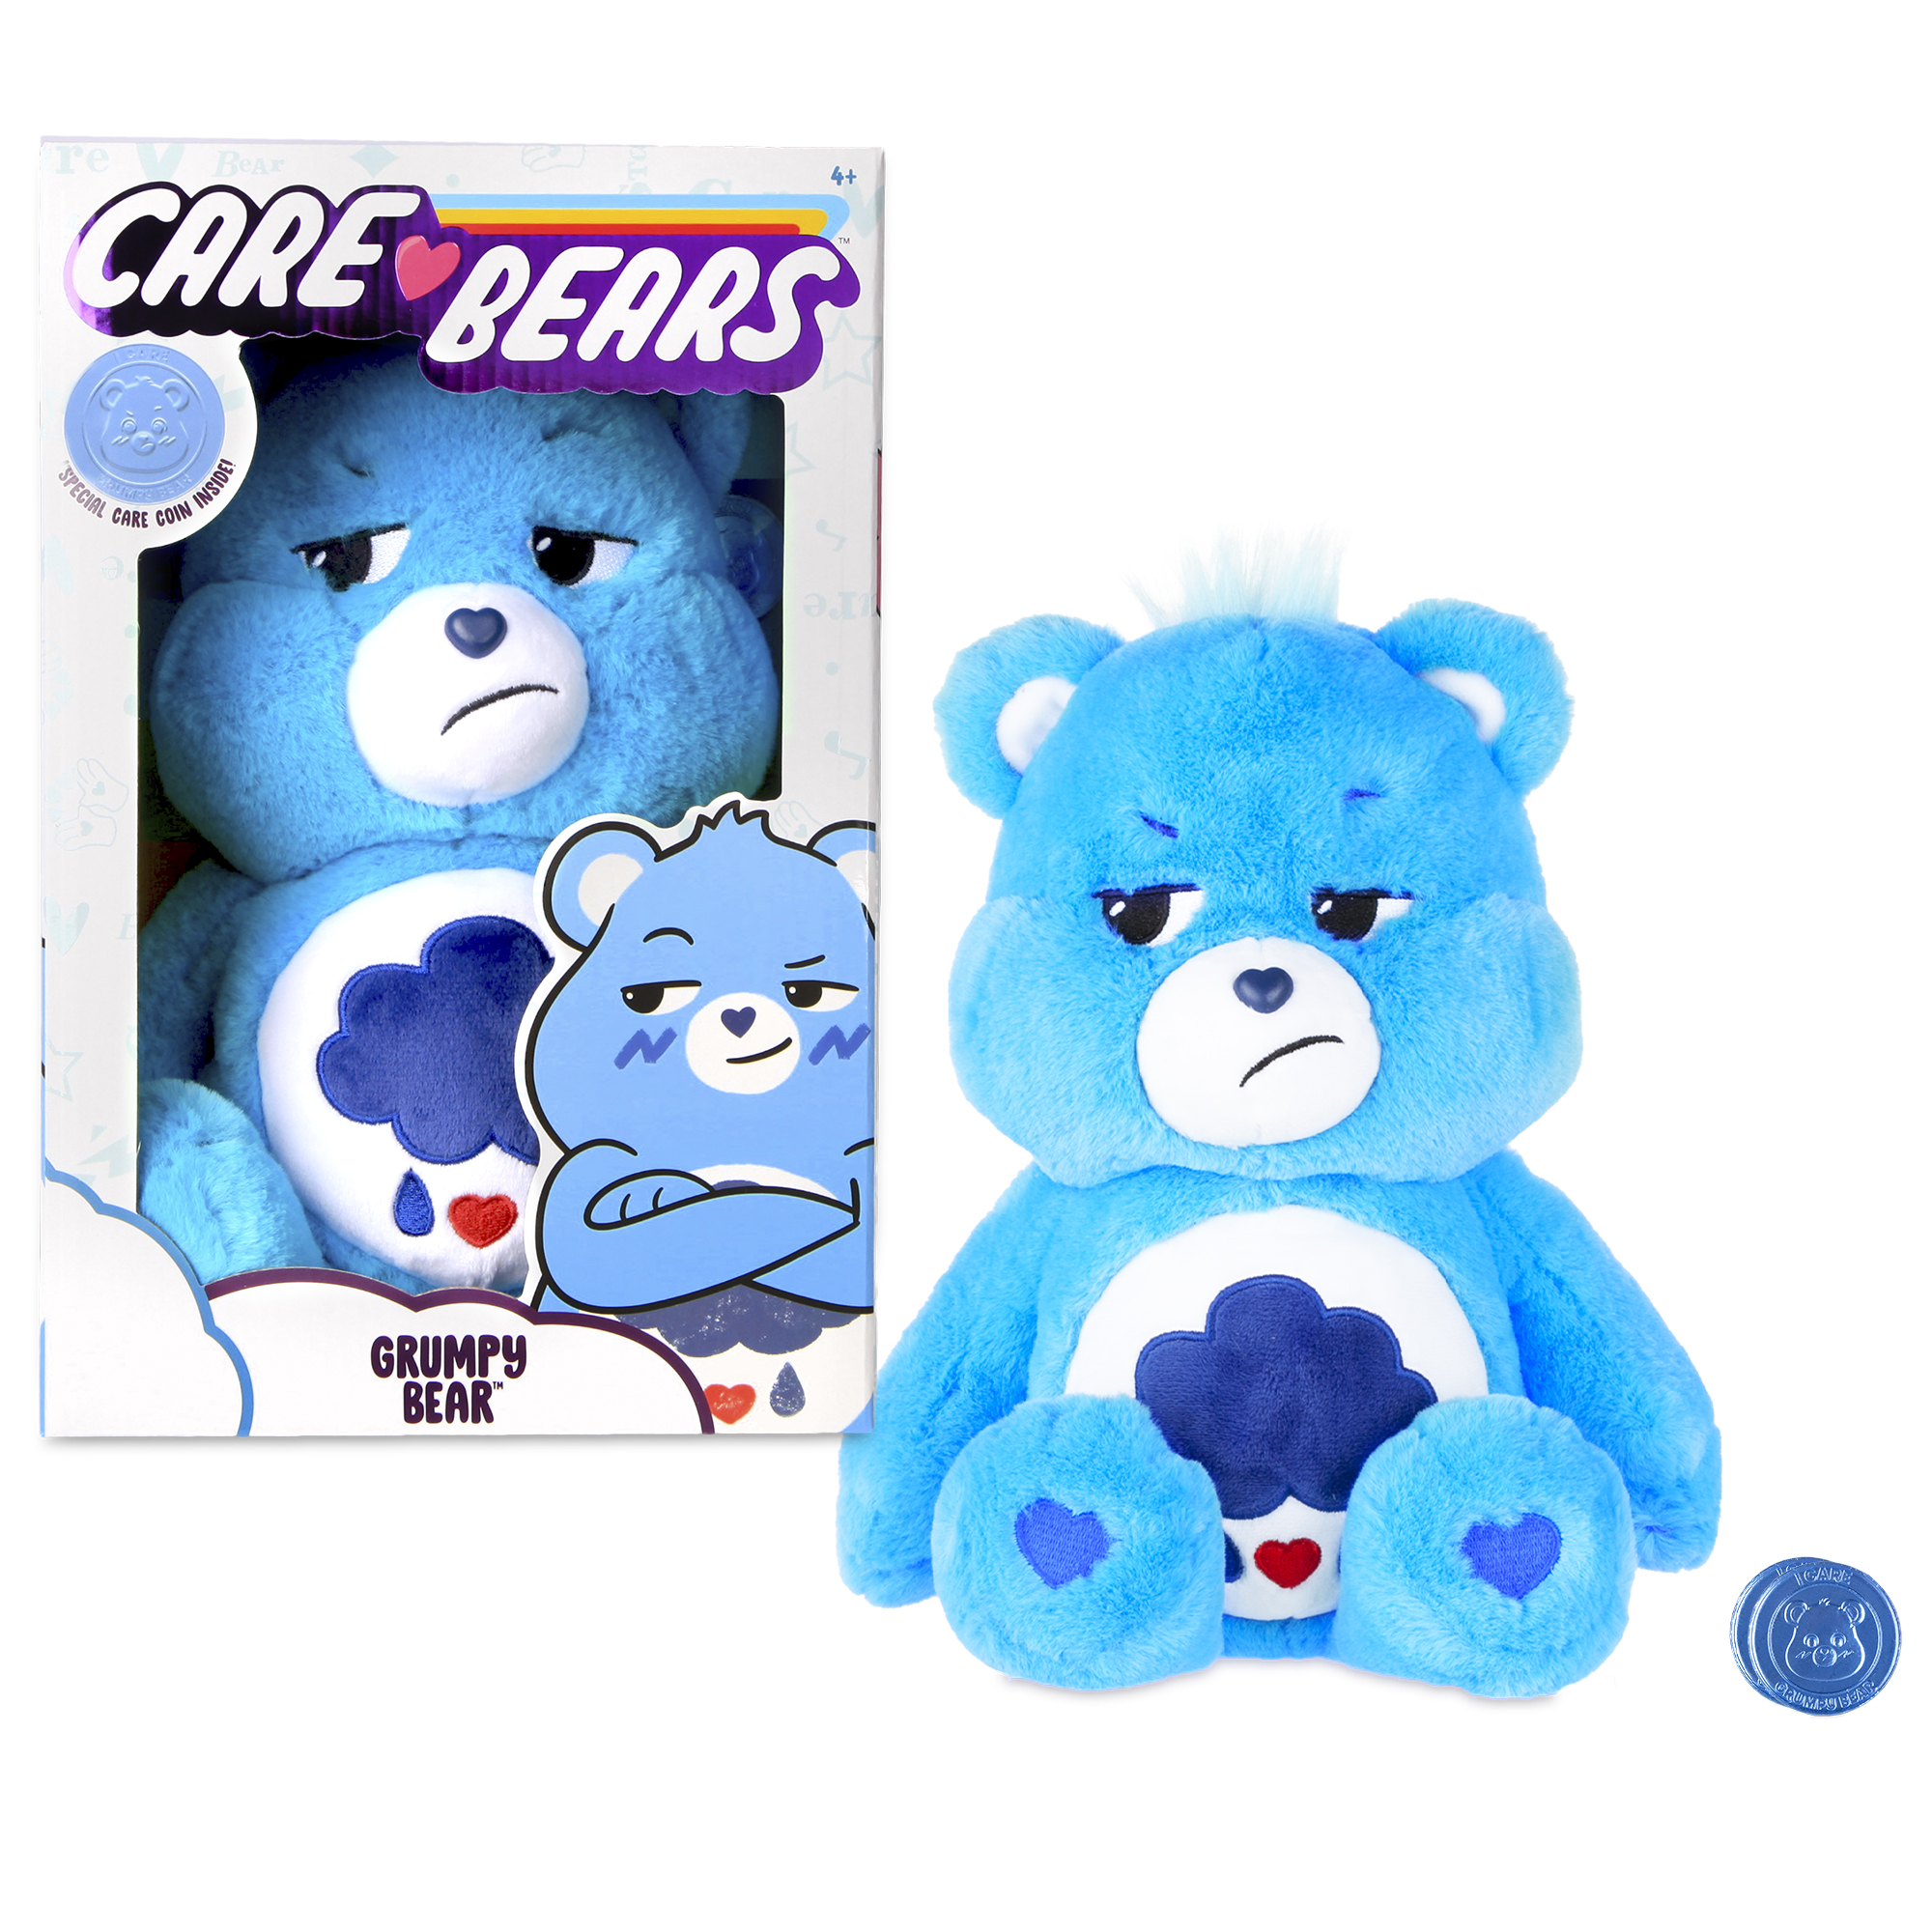 NEW 2020 Care Bears - 14" Medium Plush - Soft Huggable Material - Grumpy Bear - image 1 of 17